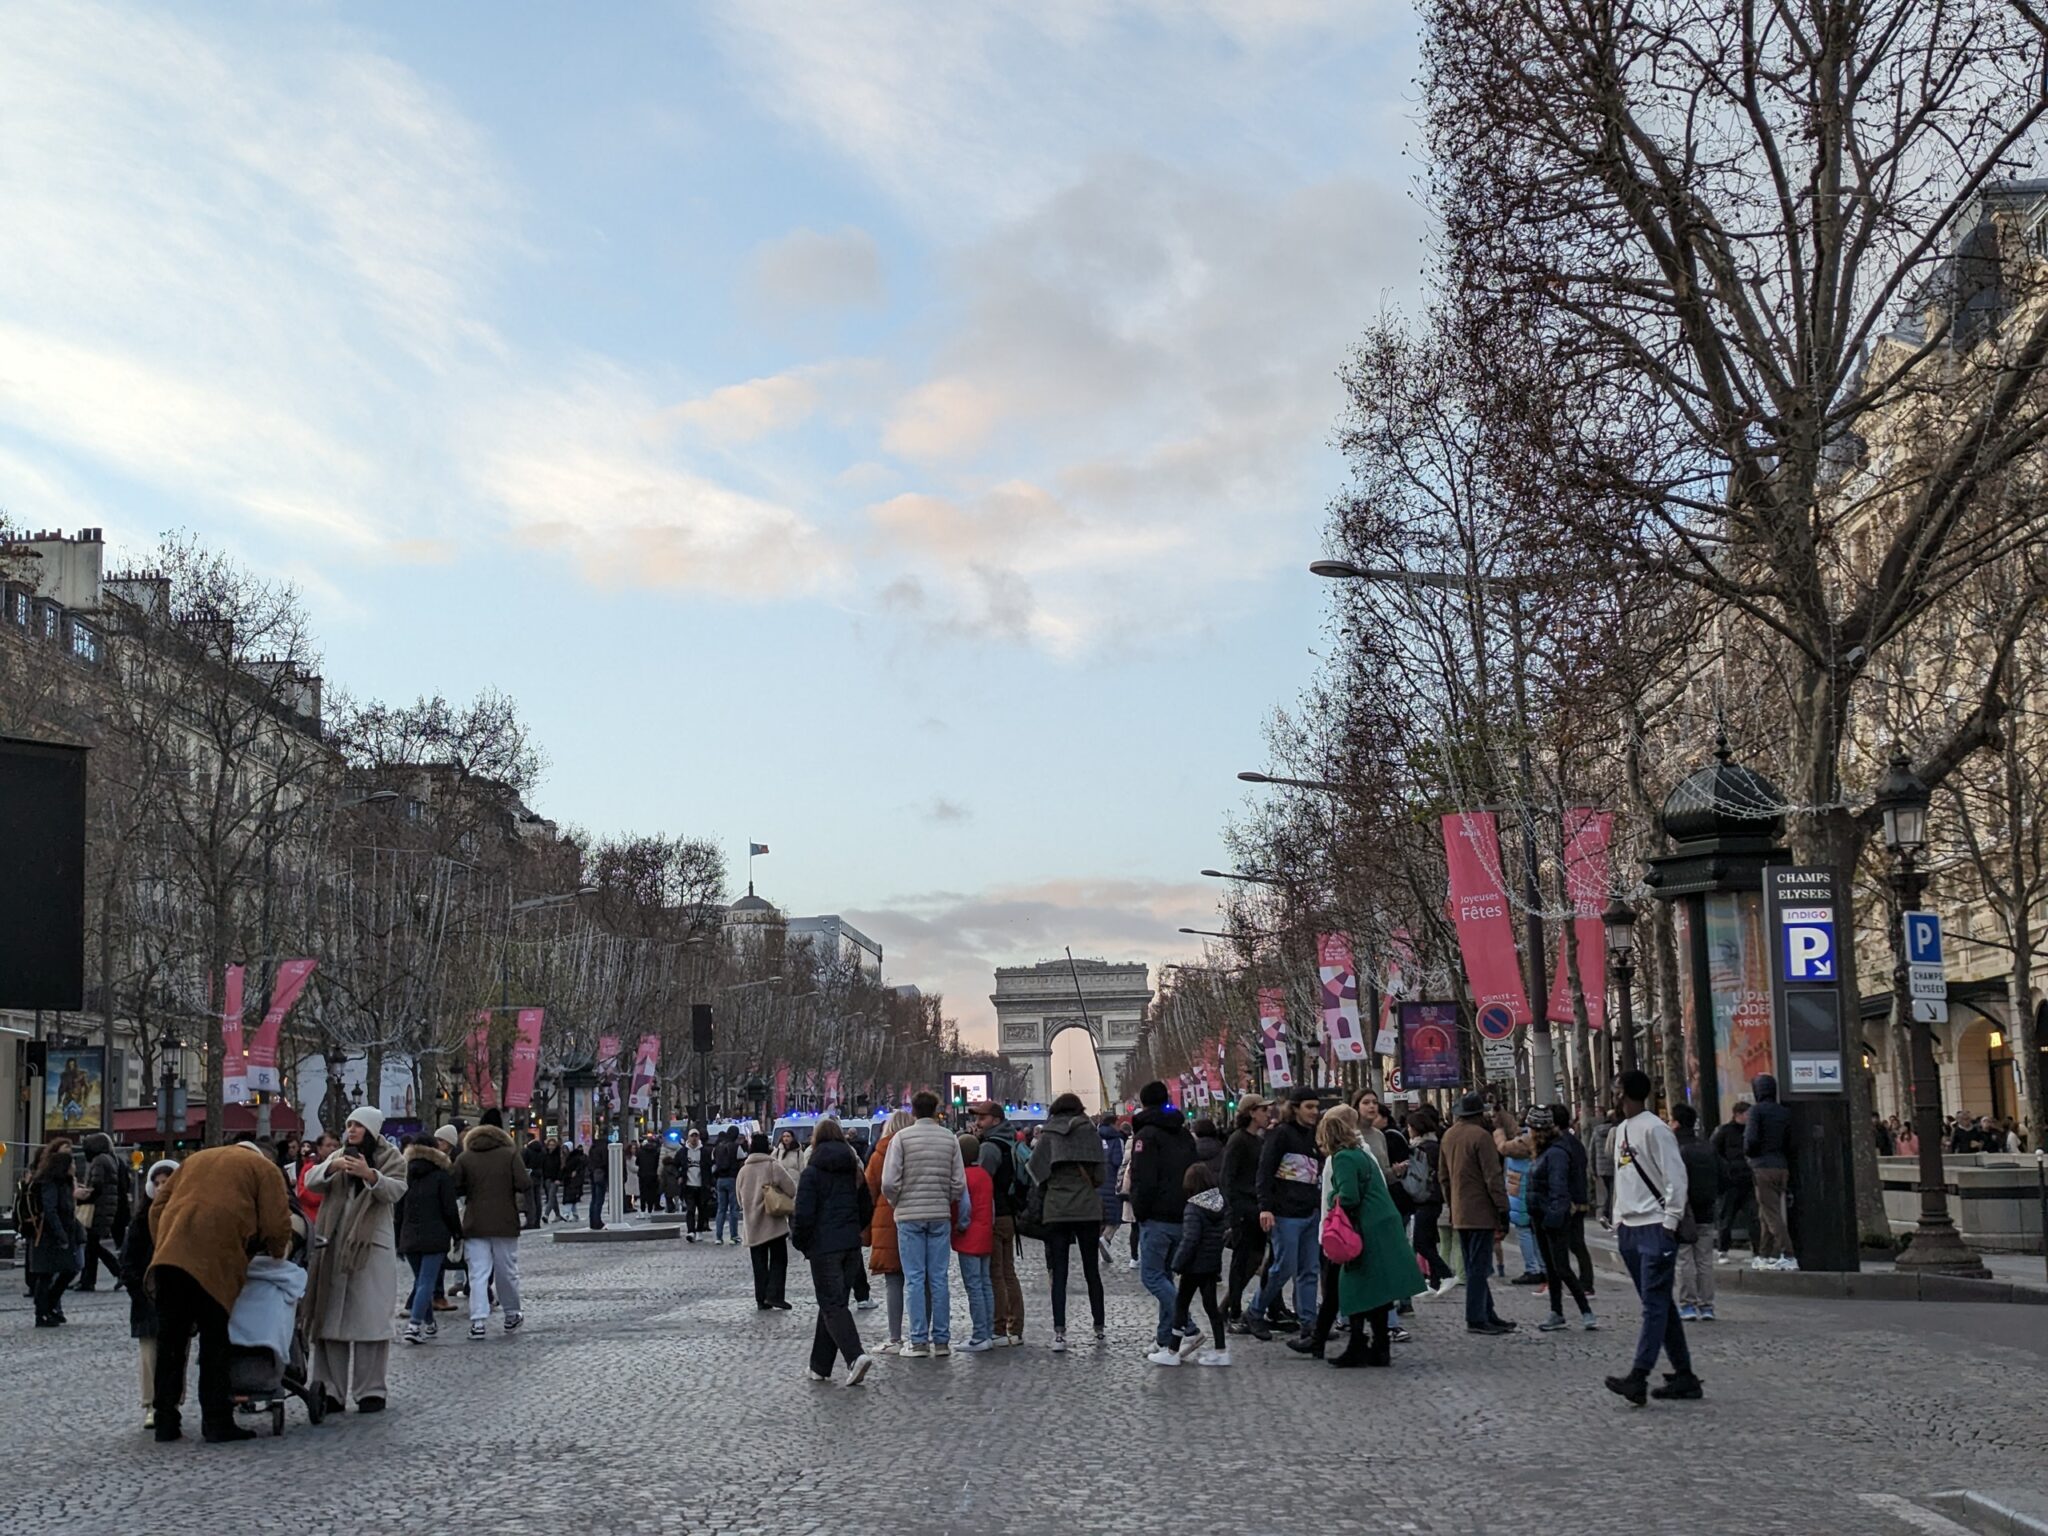 Champs-Élysées around 5pm